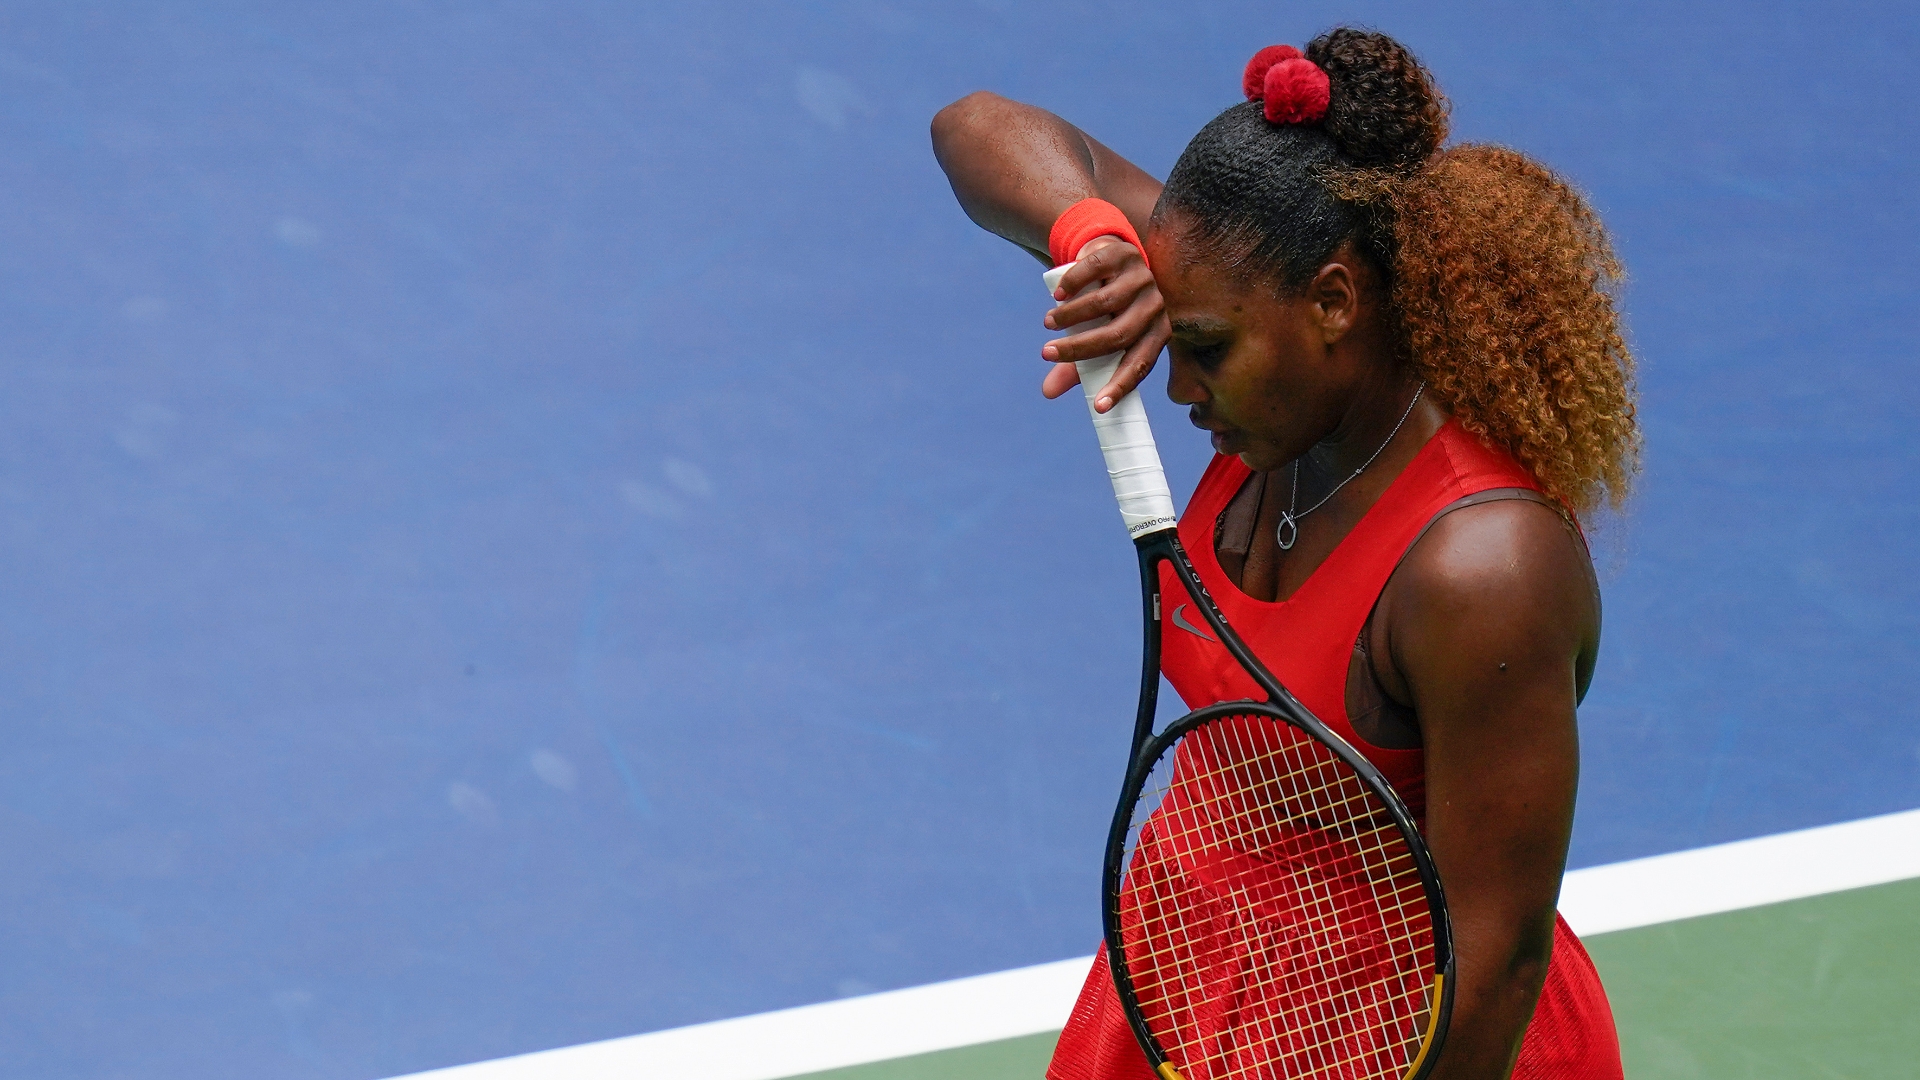 Serena drops first set of quarterfinals